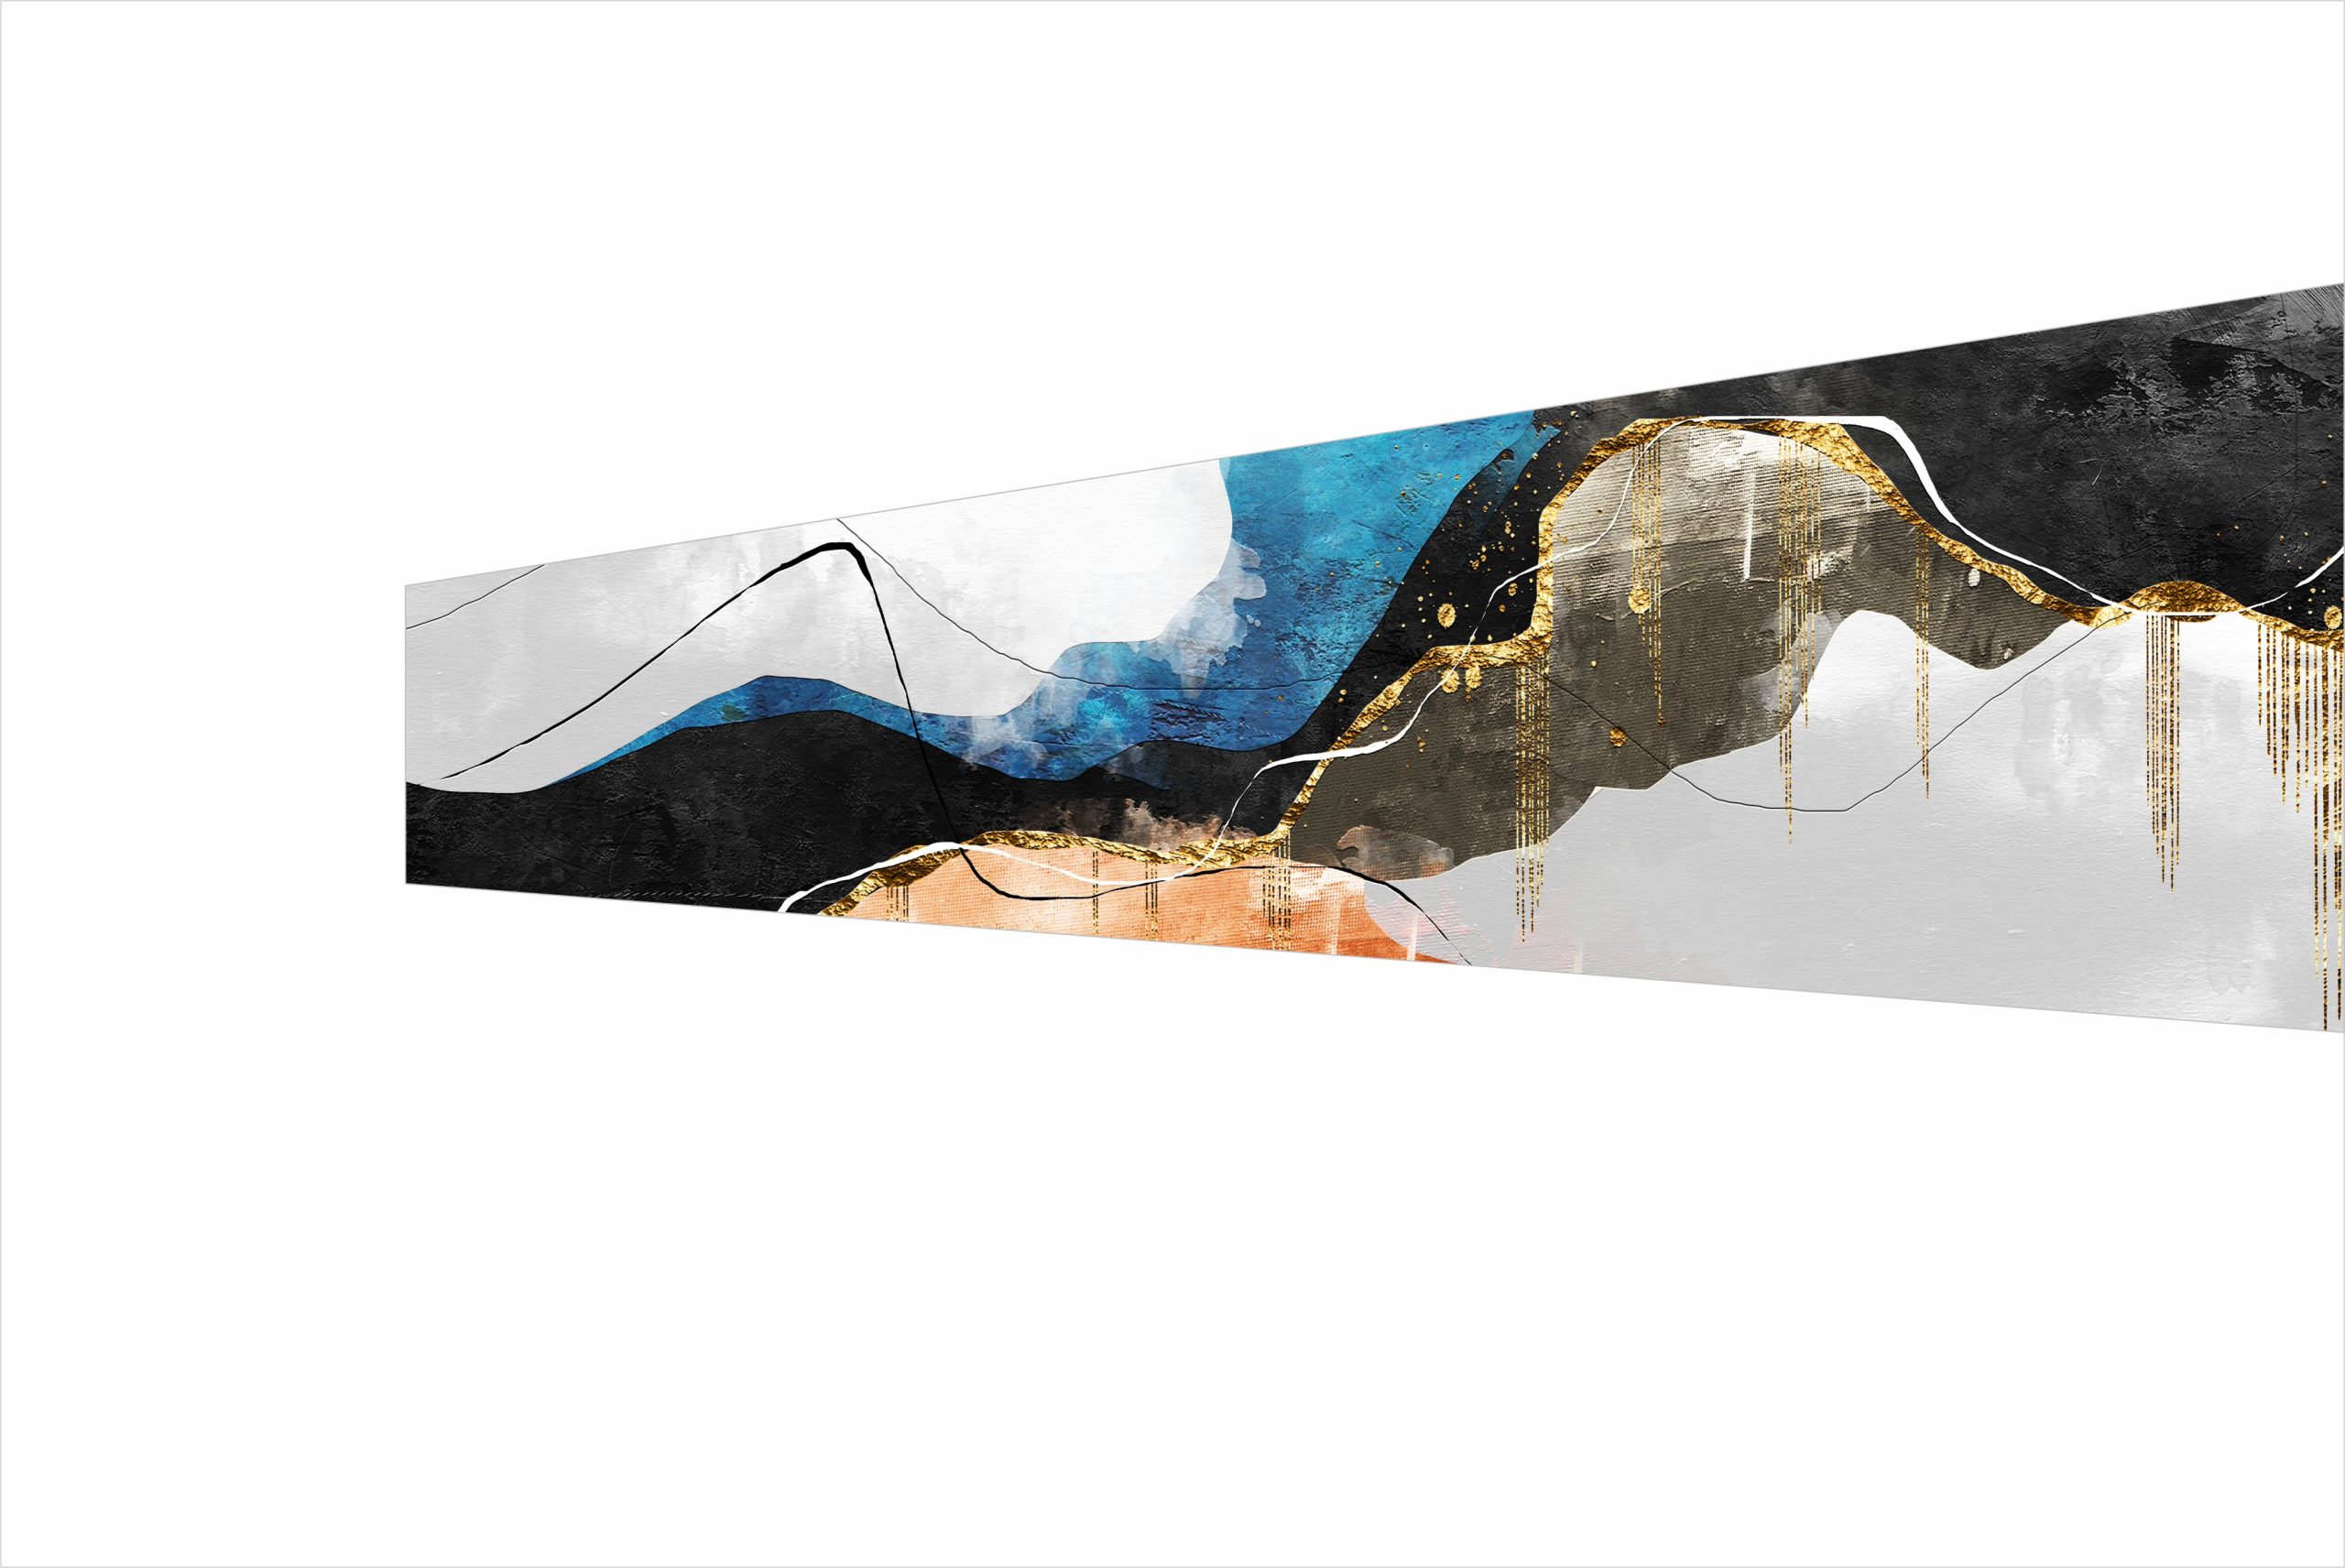 1 - Abstract Art Series Matte finish For Glass Splashbacks